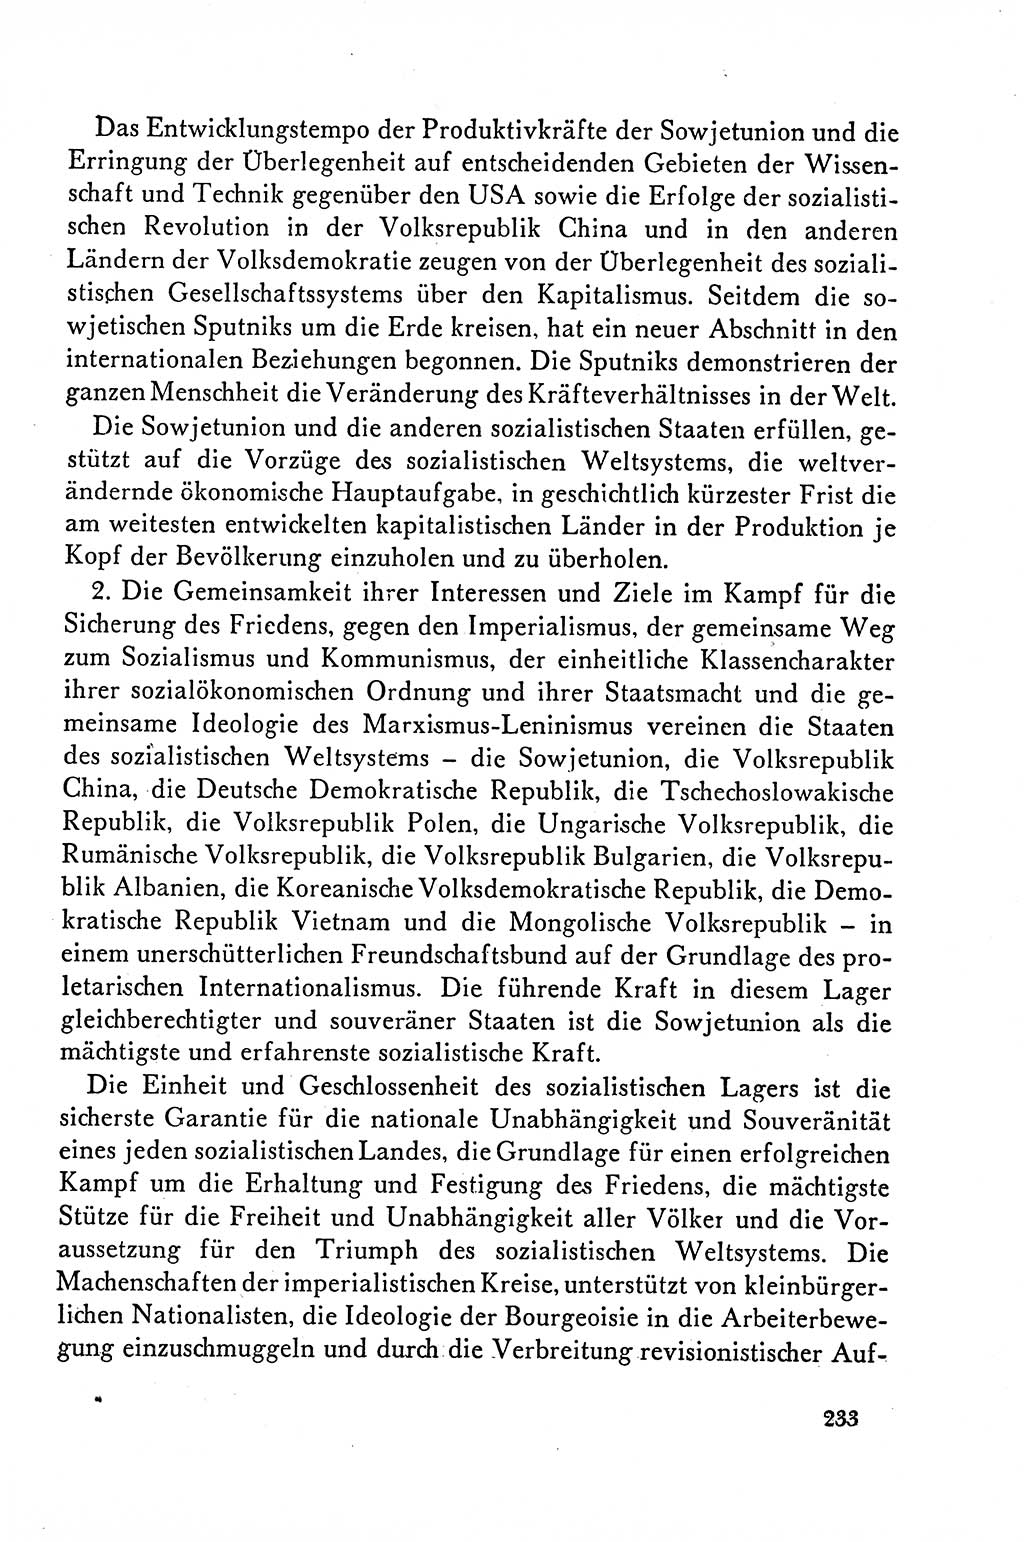 Dokumente der Sozialistischen Einheitspartei Deutschlands (SED) [Deutsche Demokratische Republik (DDR)] 1958-1959, Seite 233 (Dok. SED DDR 1958-1959, S. 233)